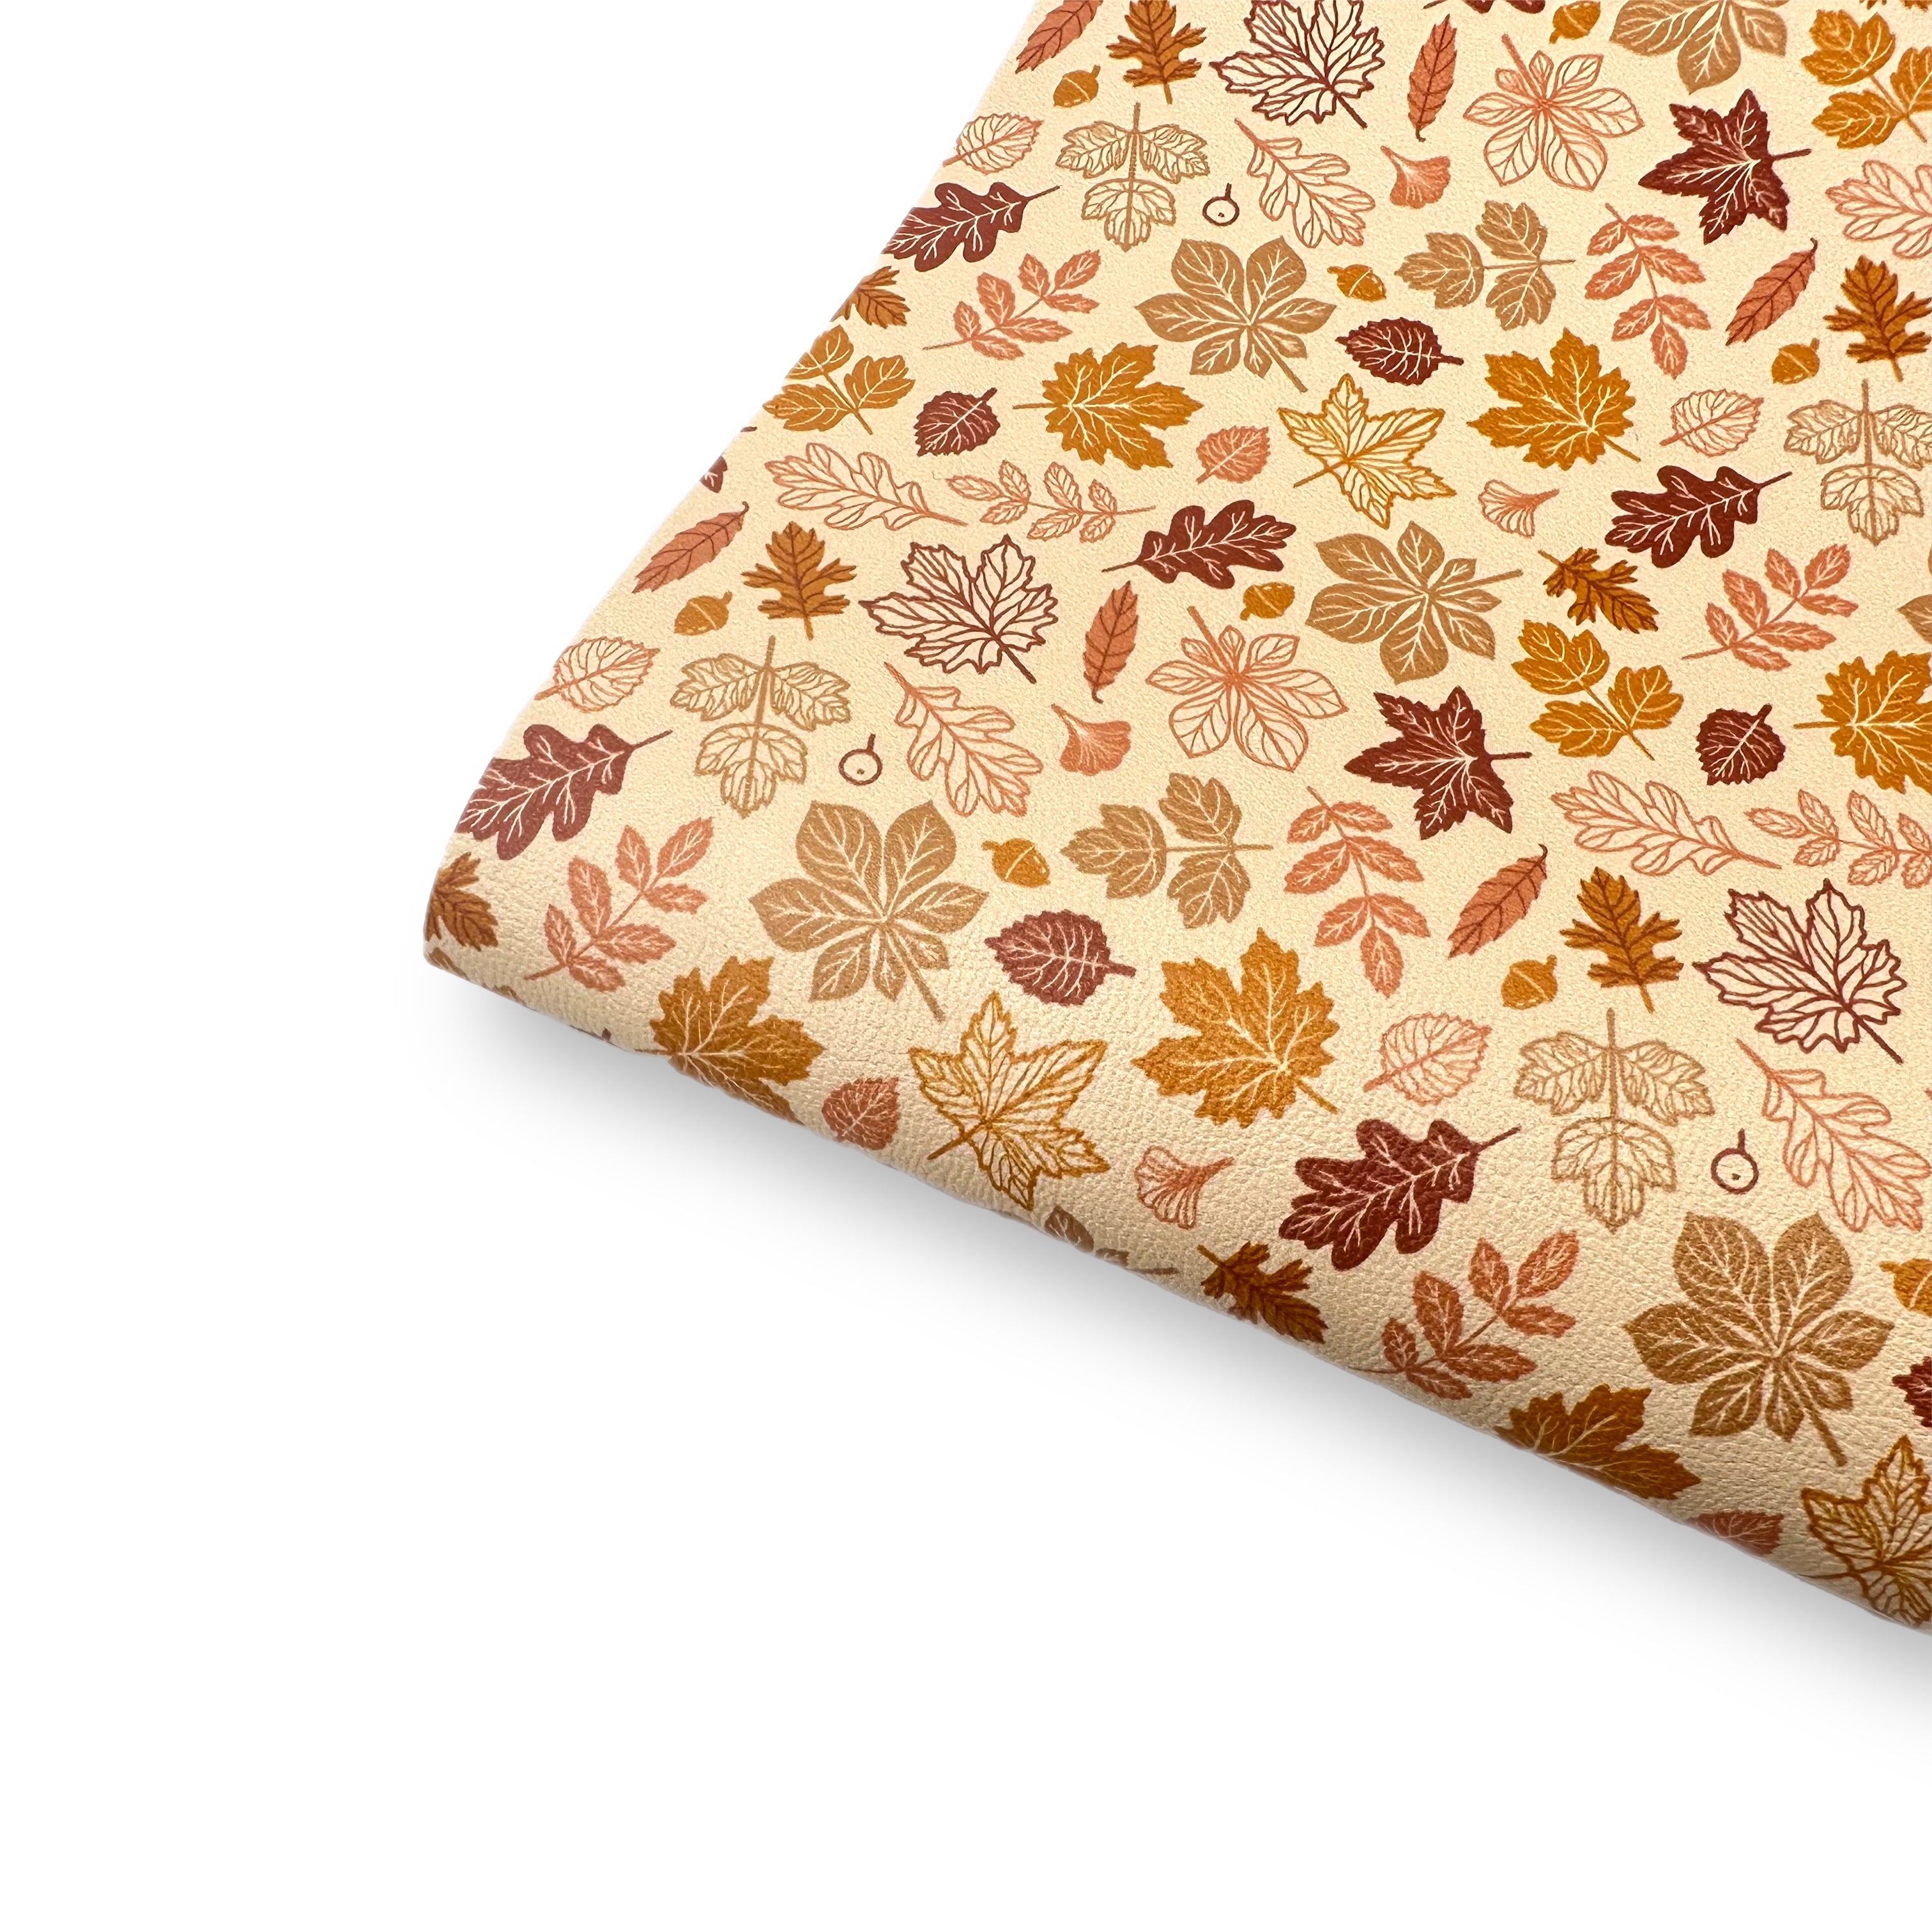 Autumn Breeze Premium Faux Leather Fabric Sheets